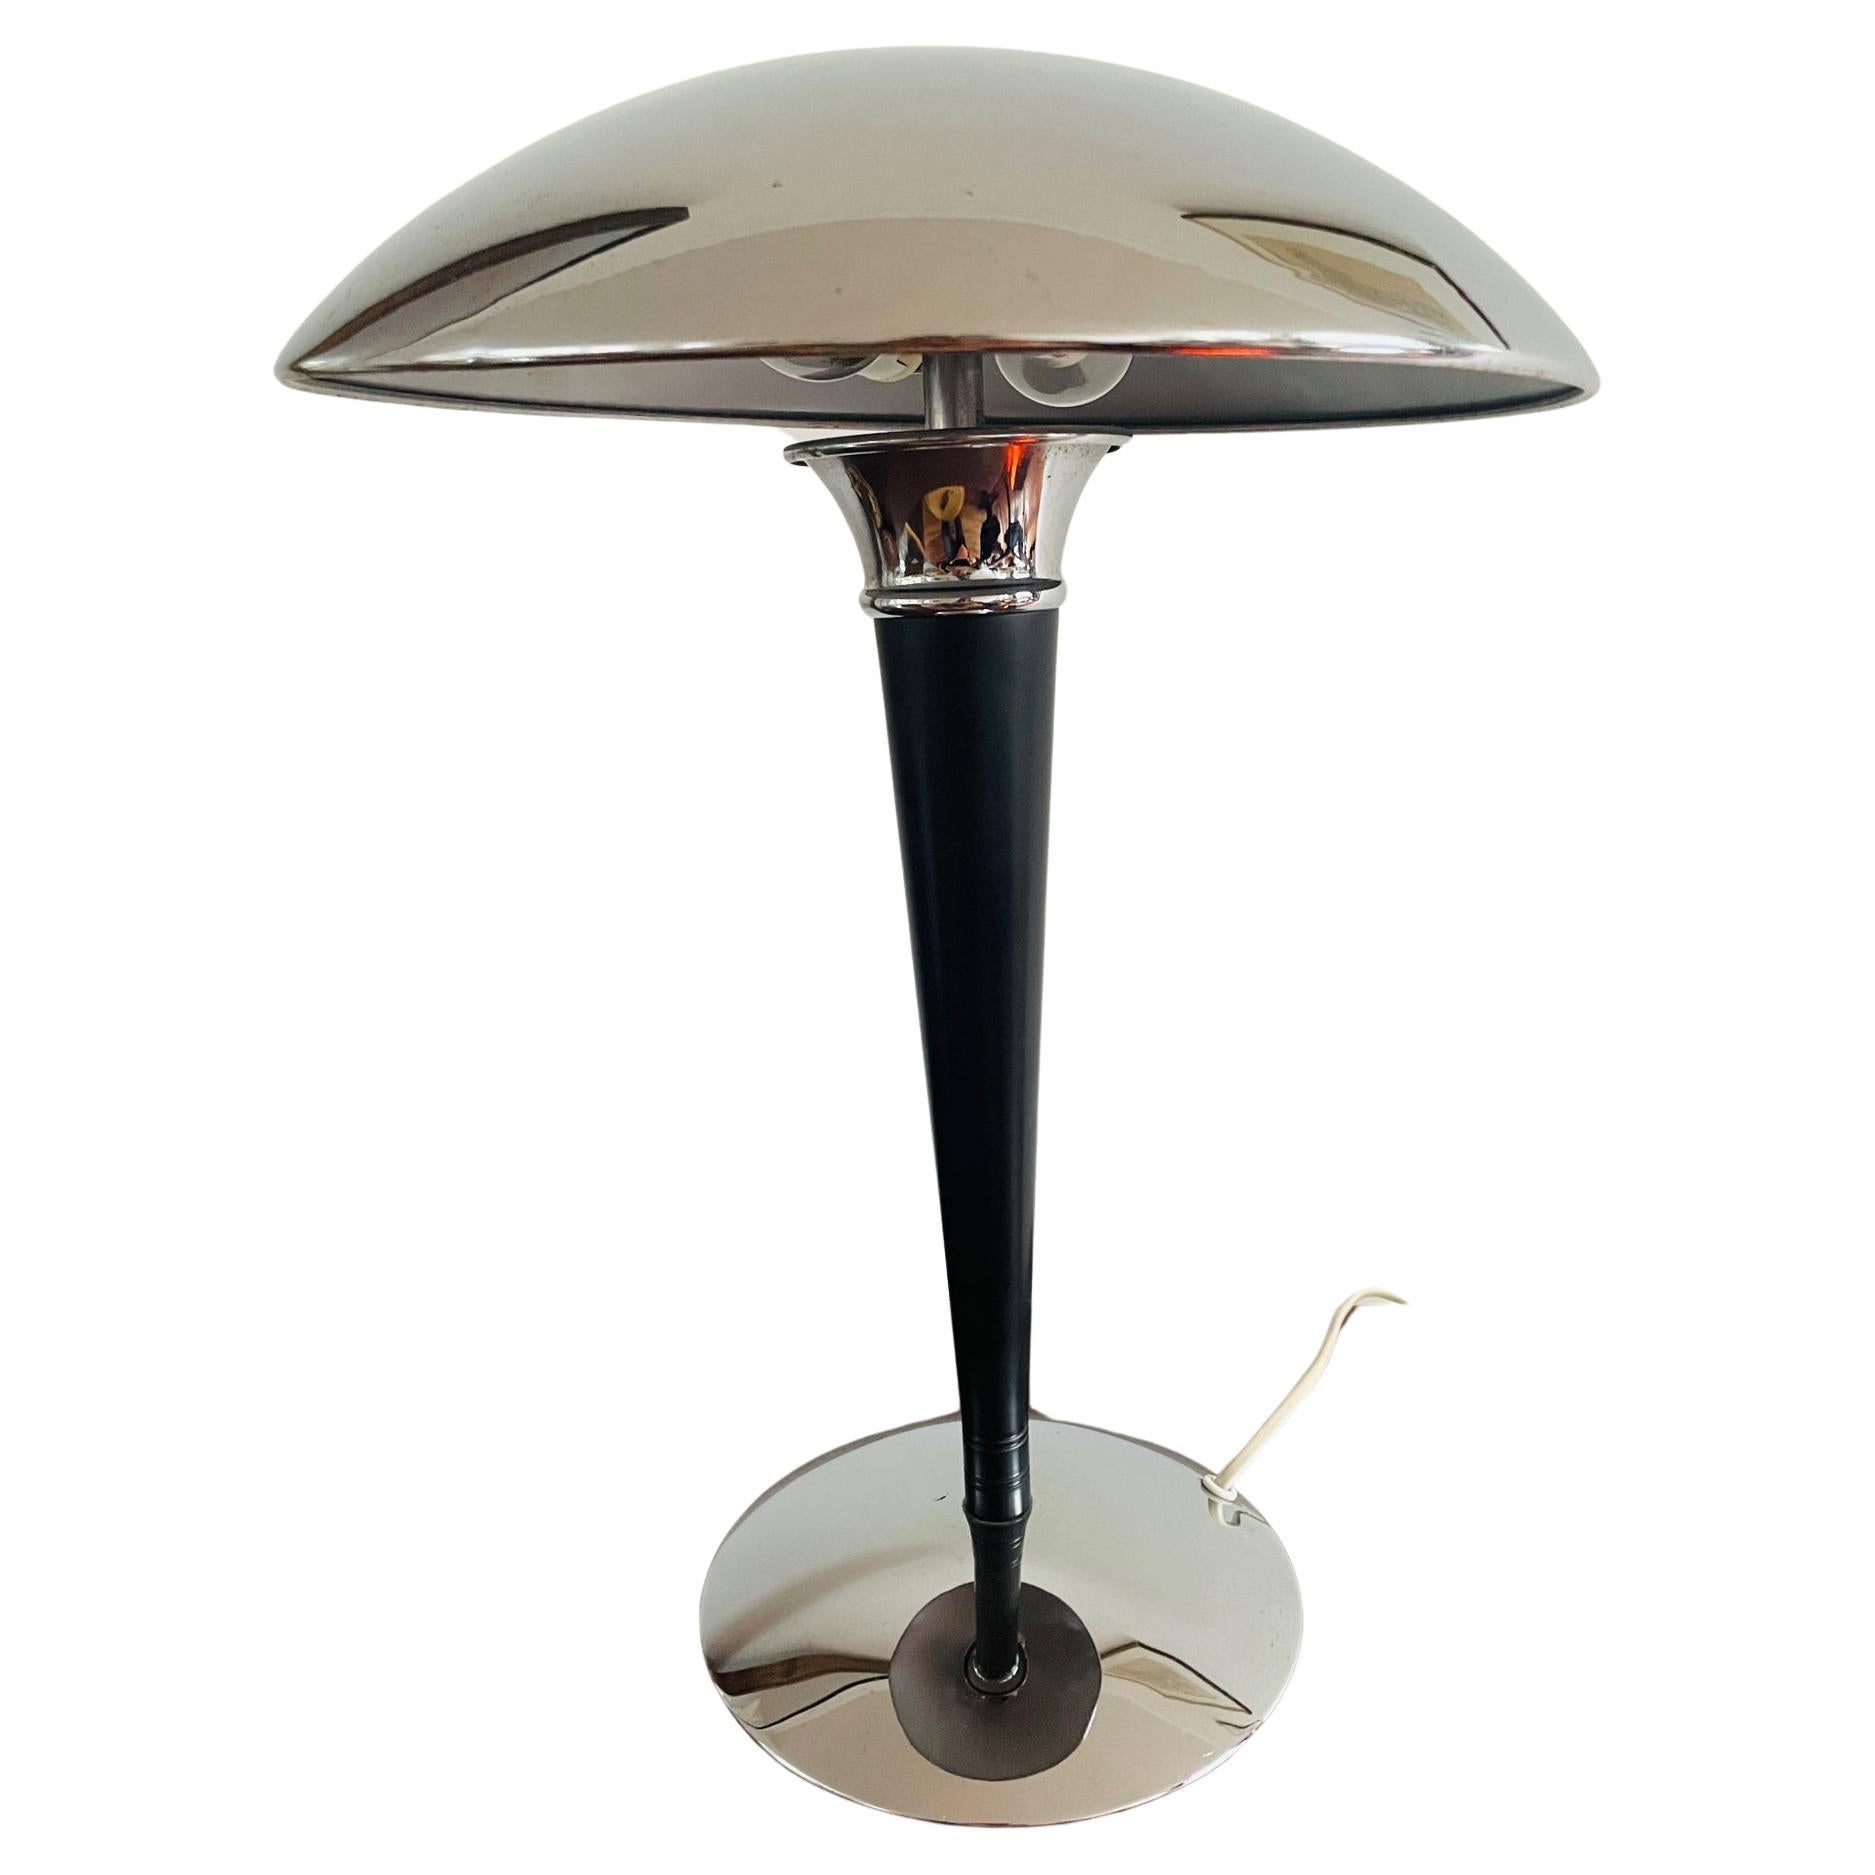 Lampe Dakapo unique. Lampe de table art déco chromée Ikea des années 1980. Lampe champignon Bauhaus